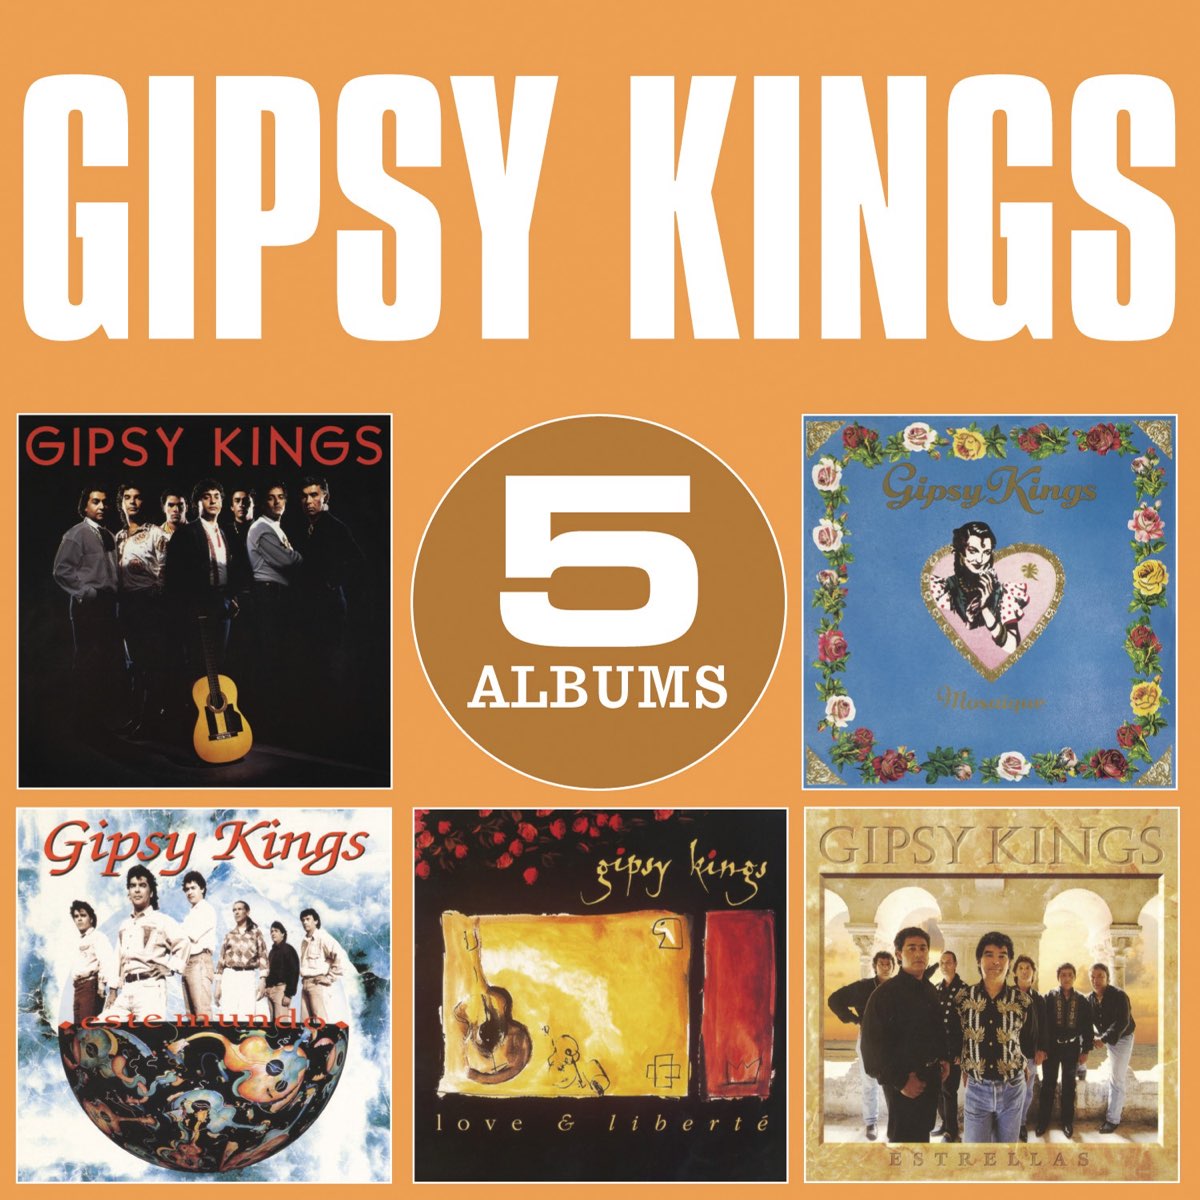 Gipsy kings песни. Original album Classics. Gipsy Kings albums. Gipsy Kings Gipsy Kings album. Gipsy Kings Volare.